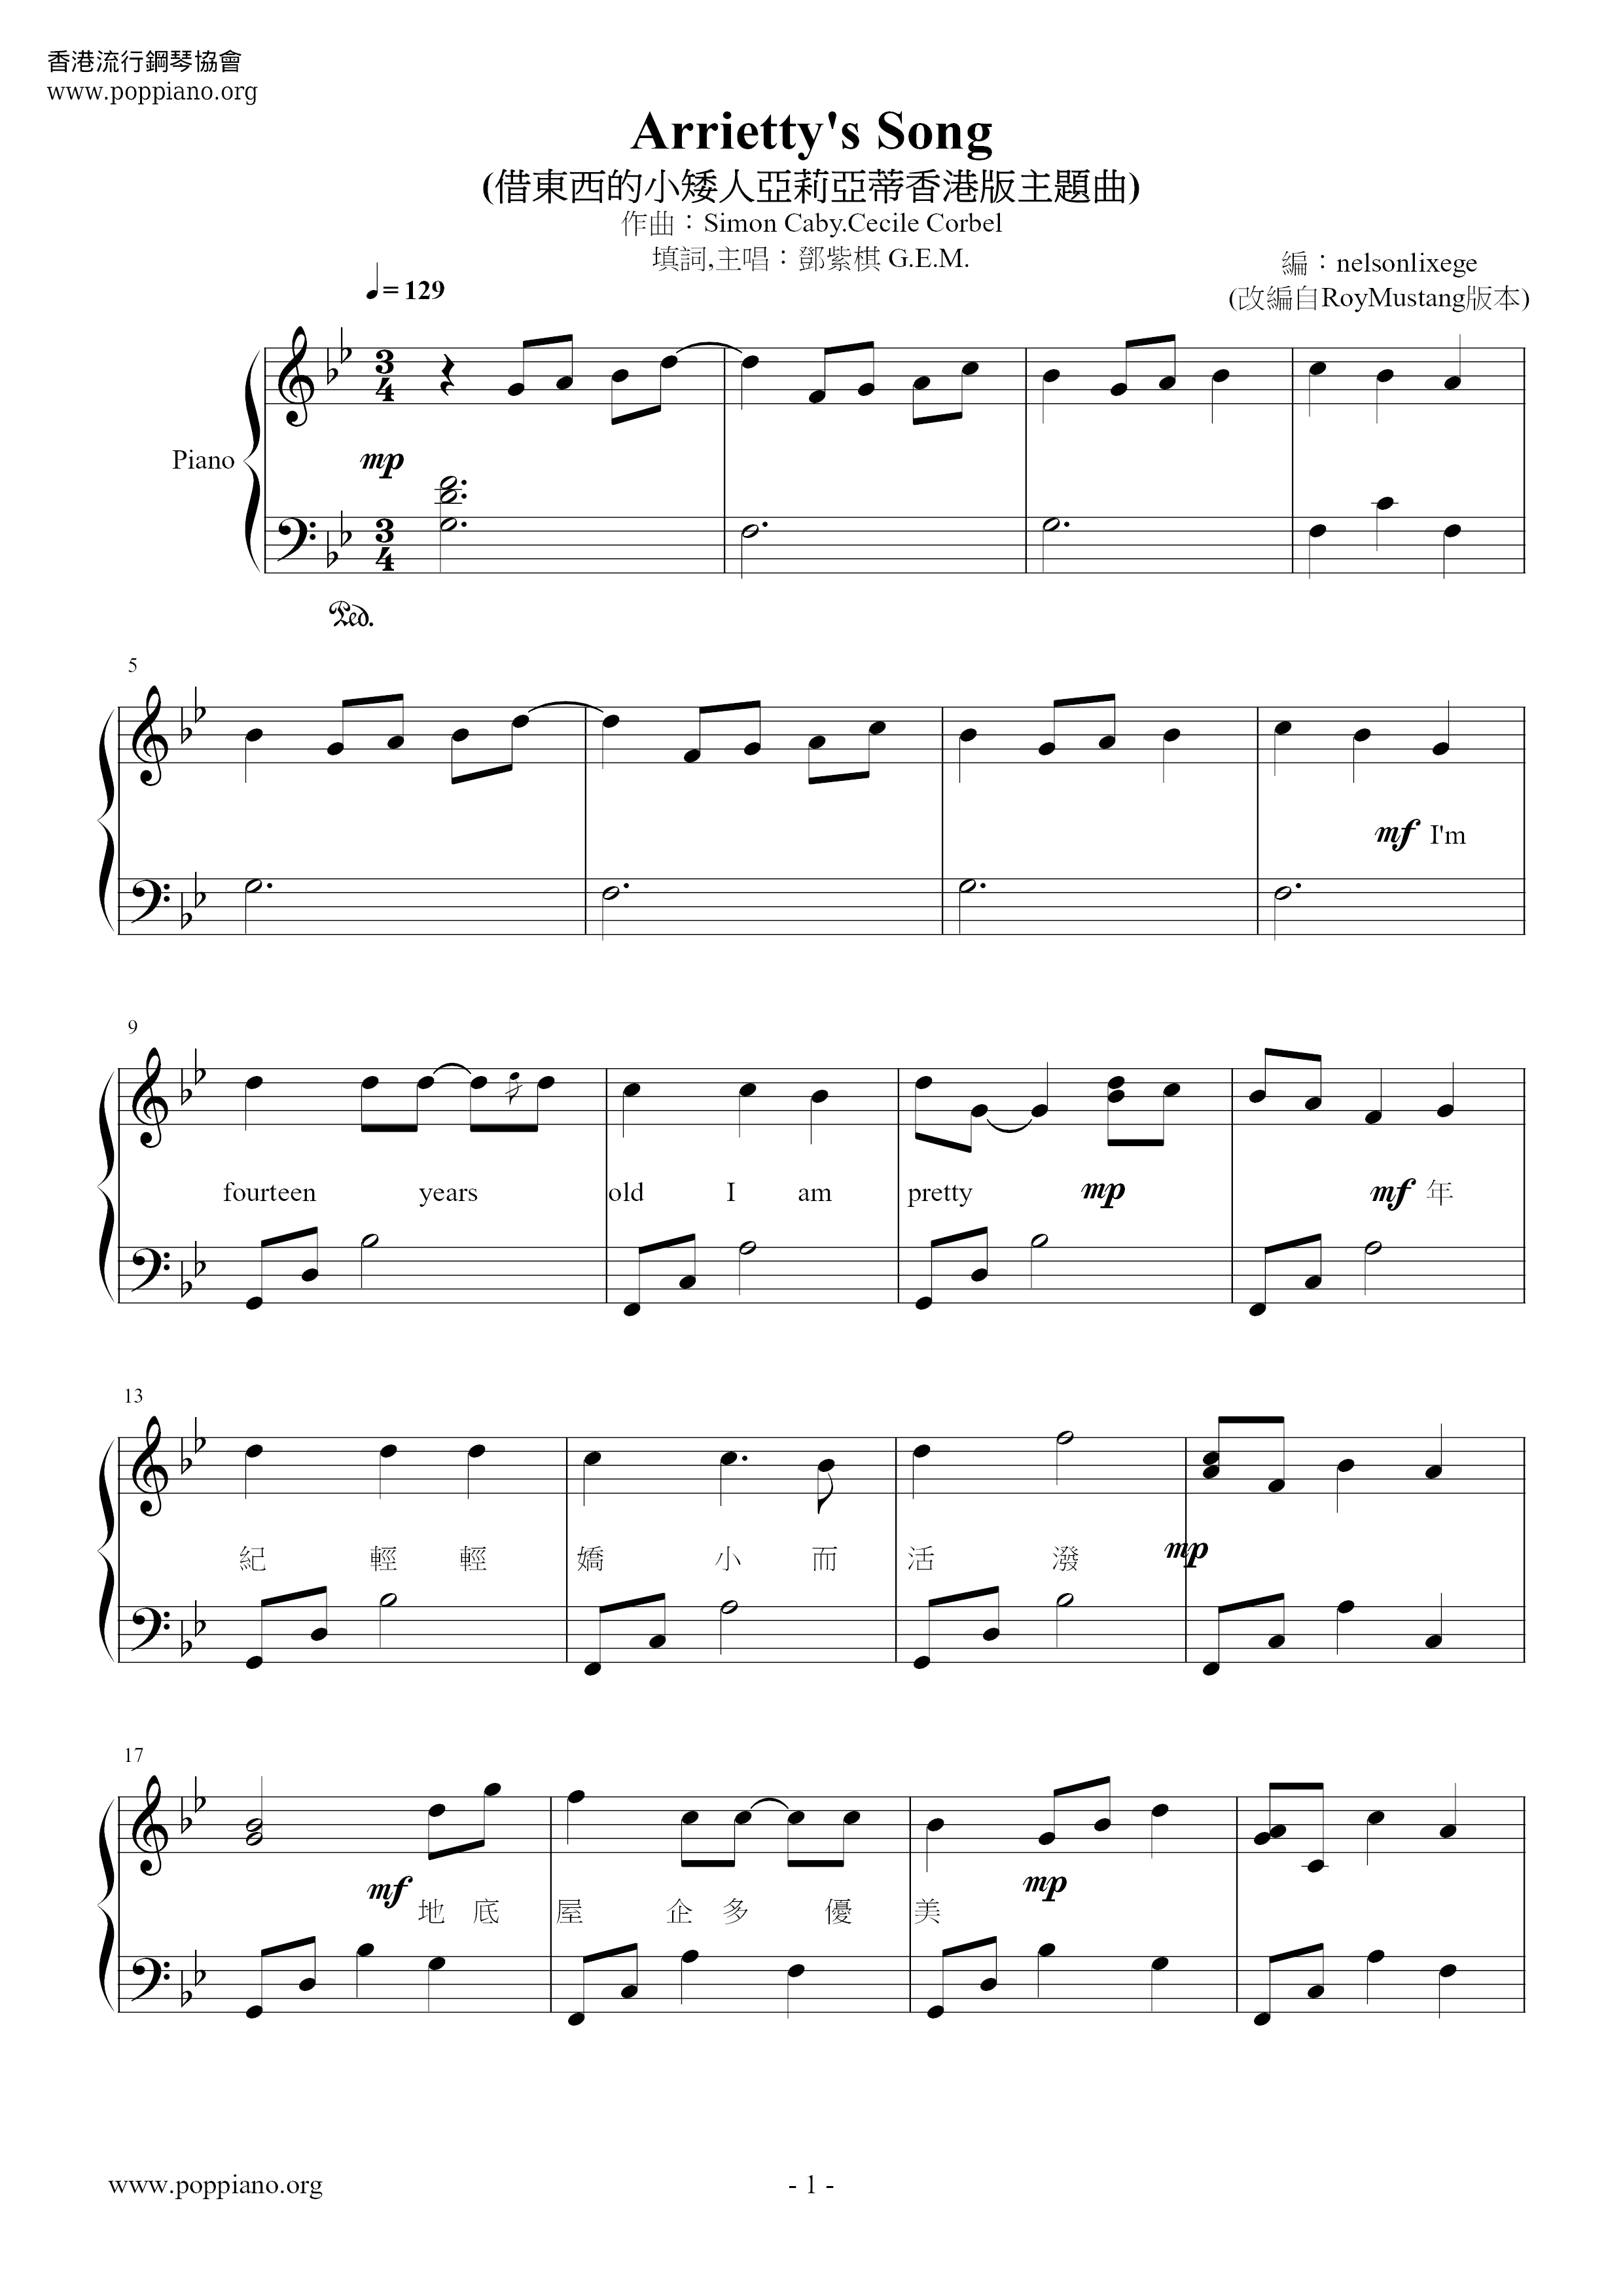 Arrietty's Song Score